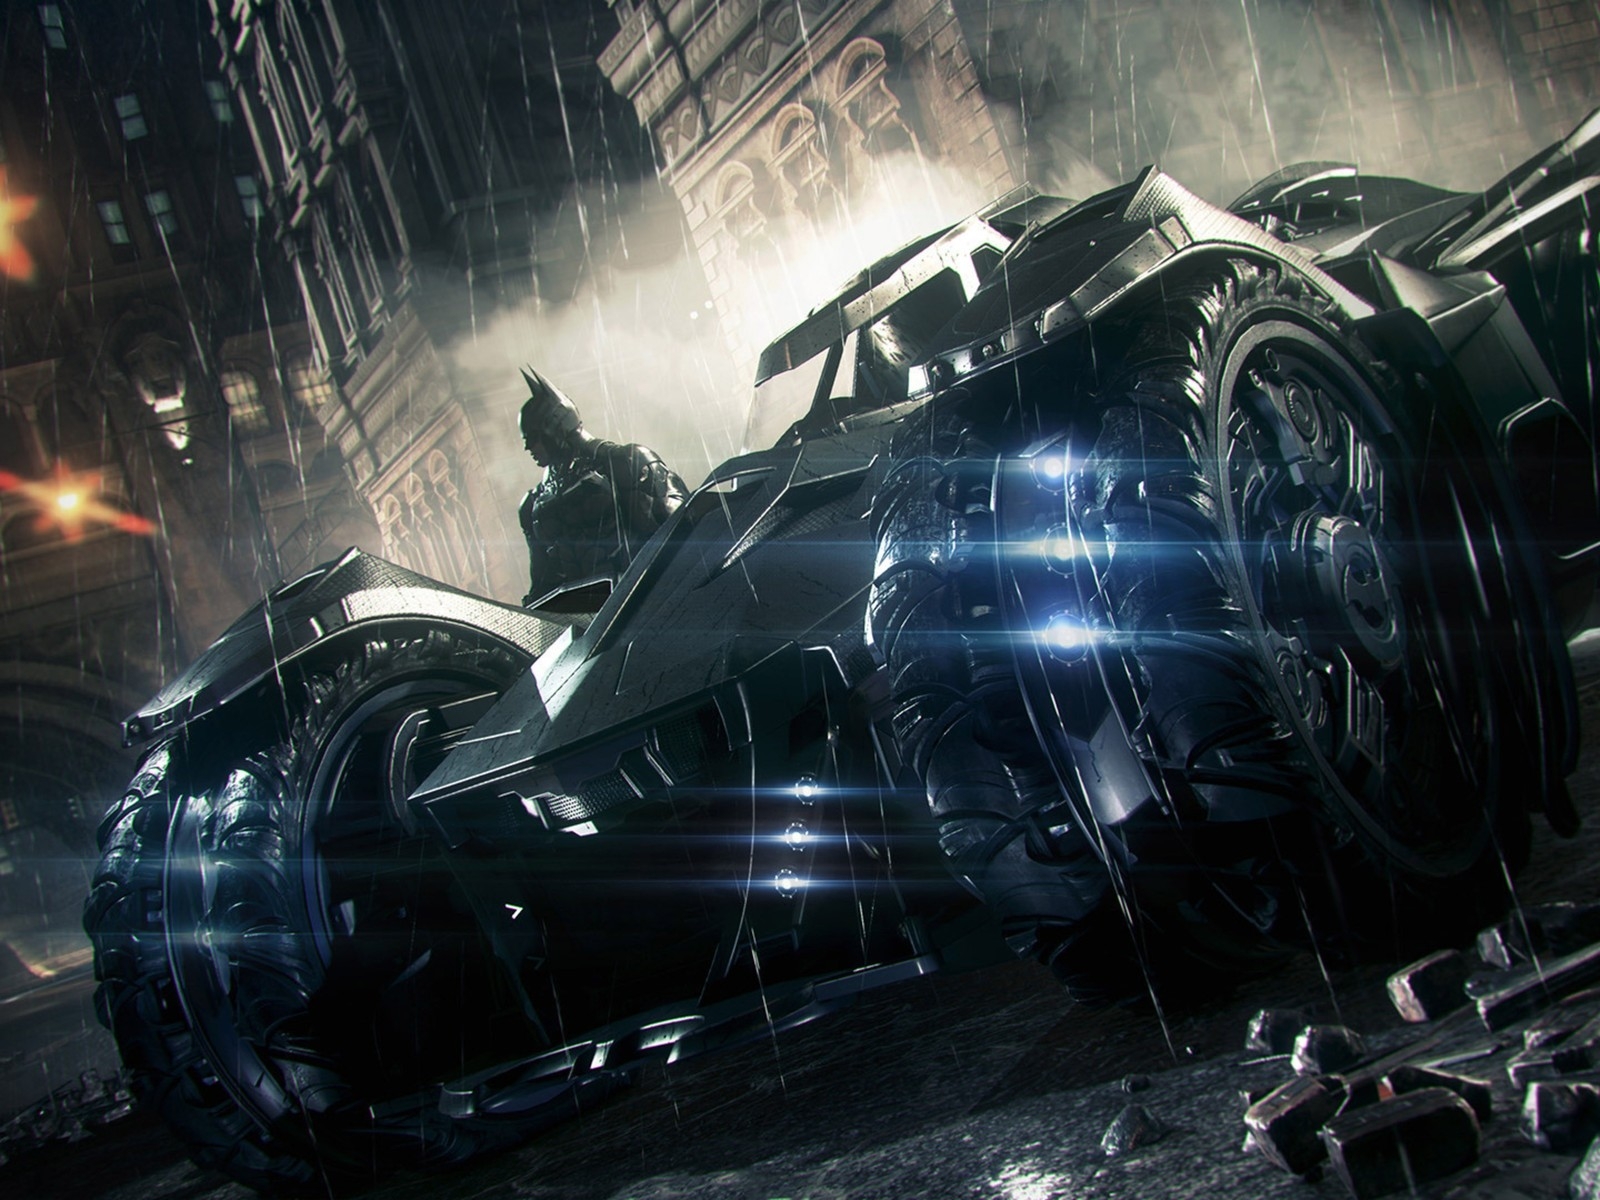 Batman Arkham Knight 3 Car for 1600 x 1200 resolution